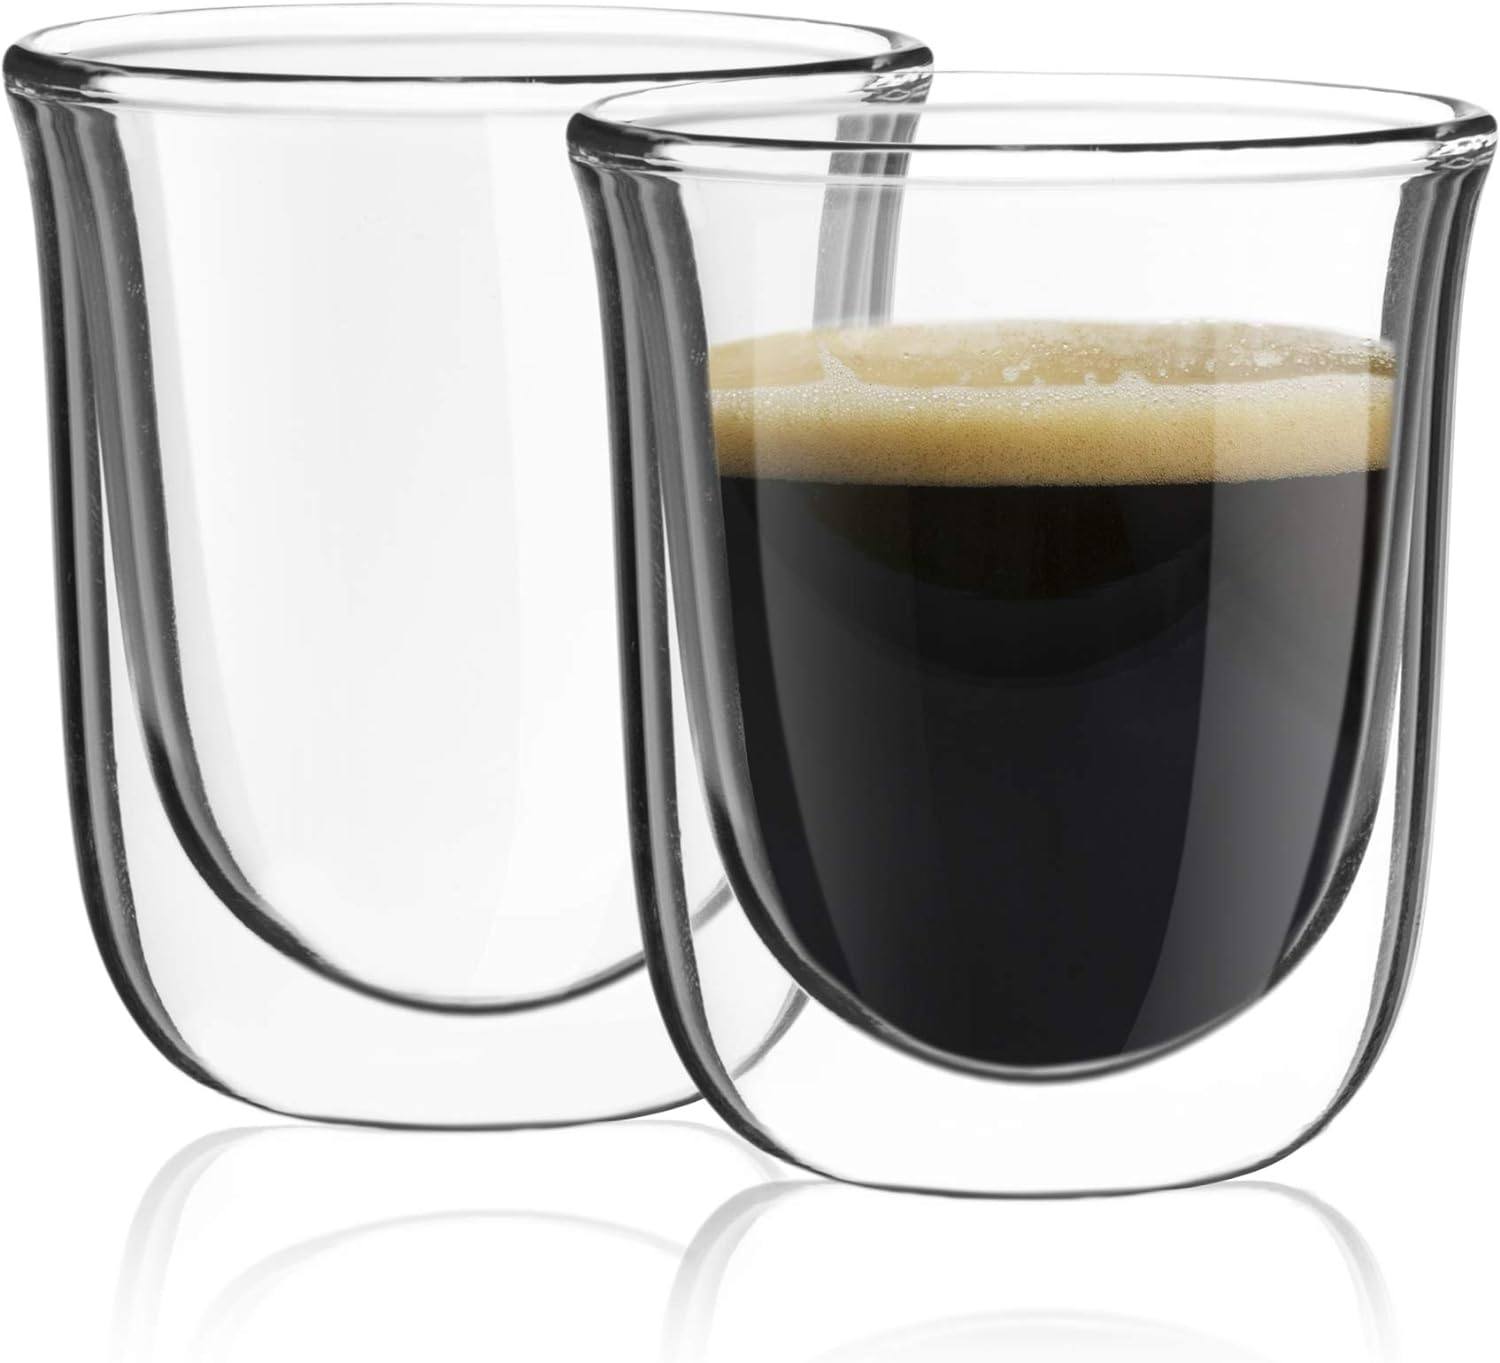 Double espresso glass coffee cup (2-piece set) |2 oz